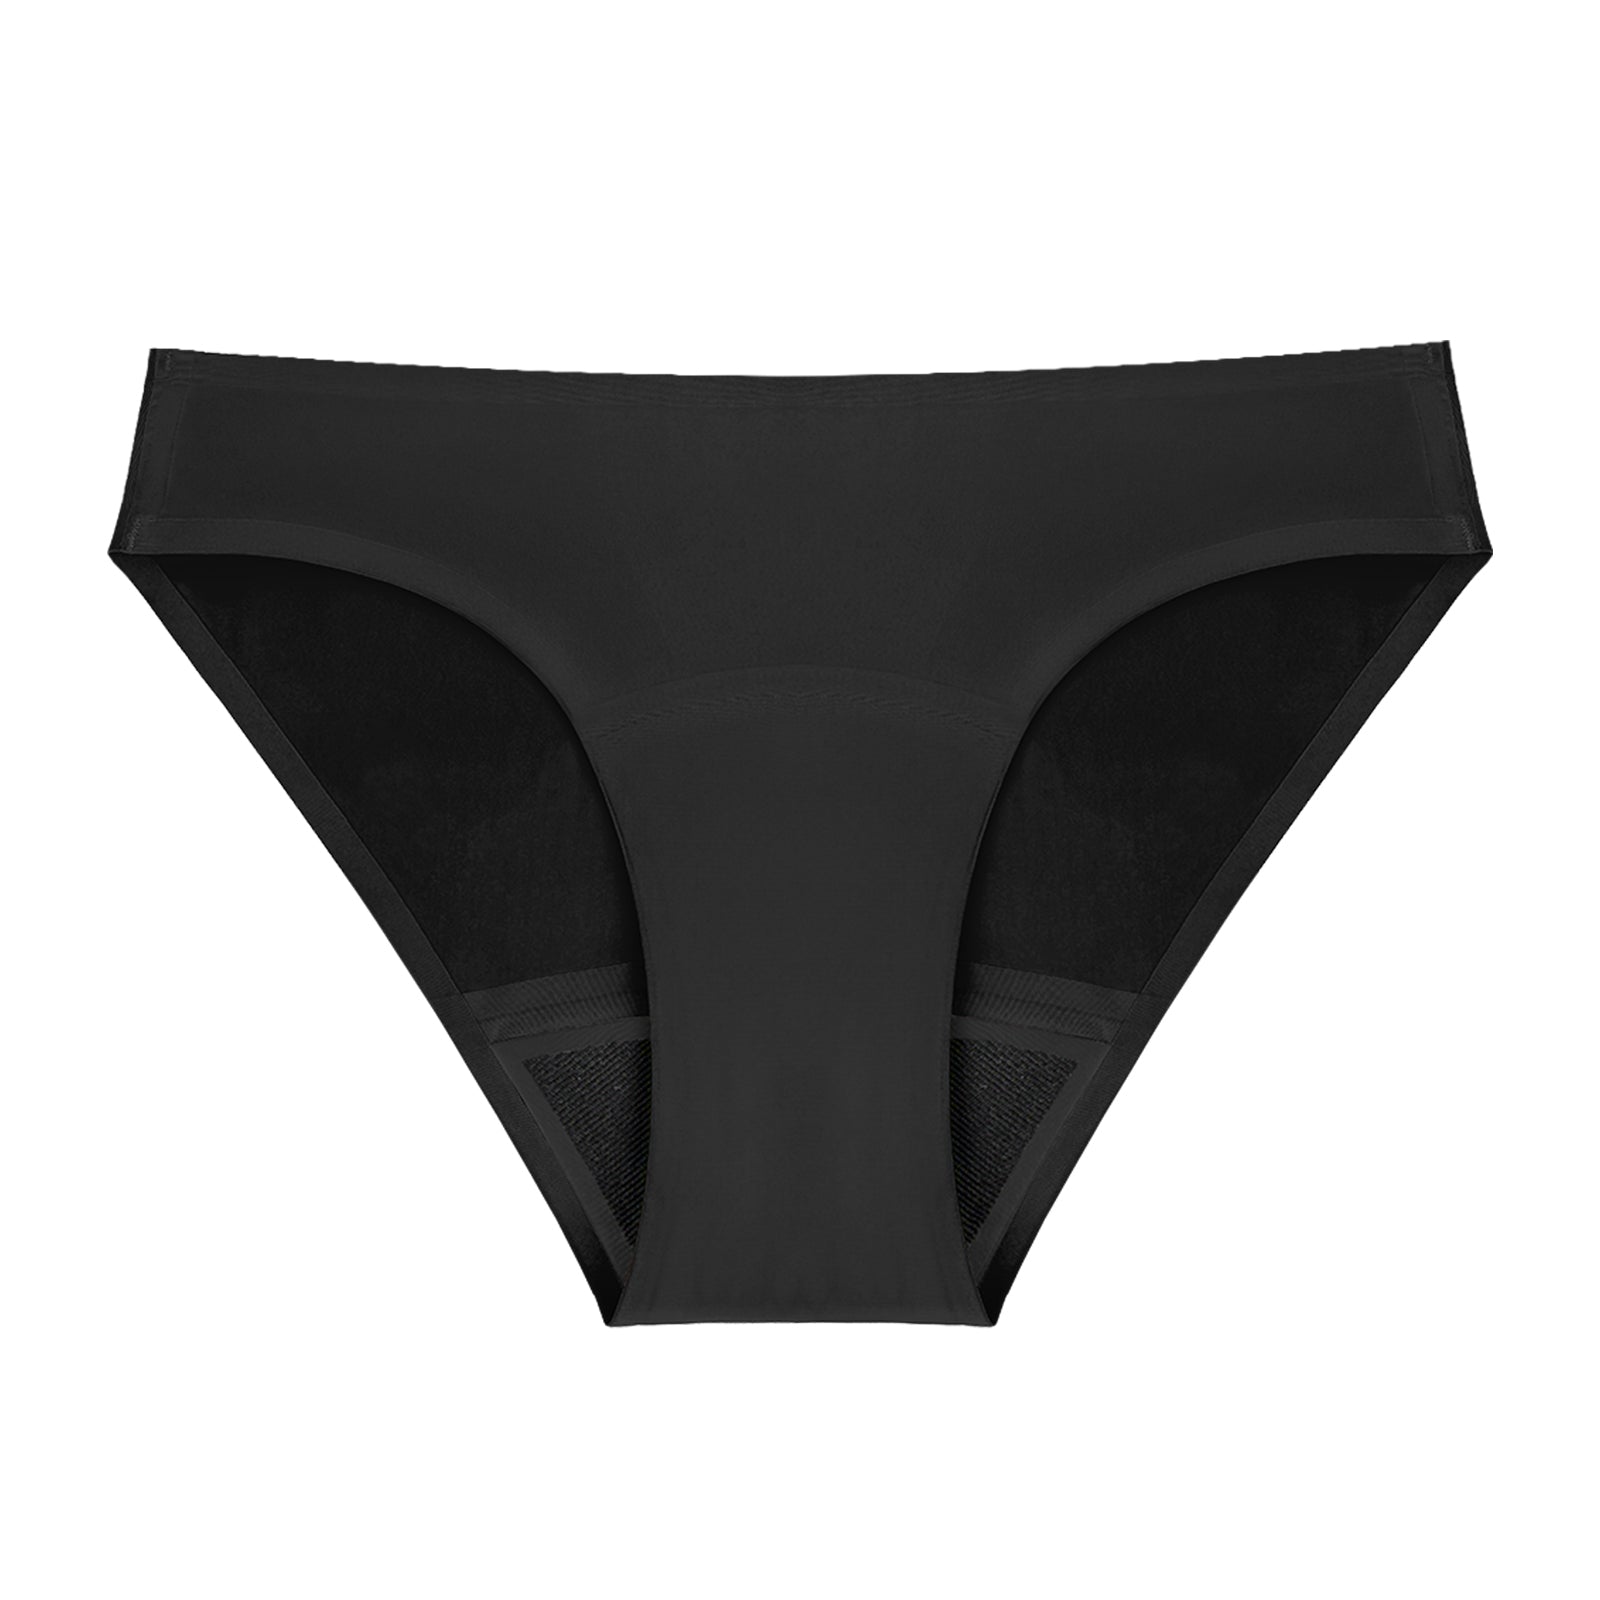  TIICHOO Period Underwear Seamless Bikini Moderate